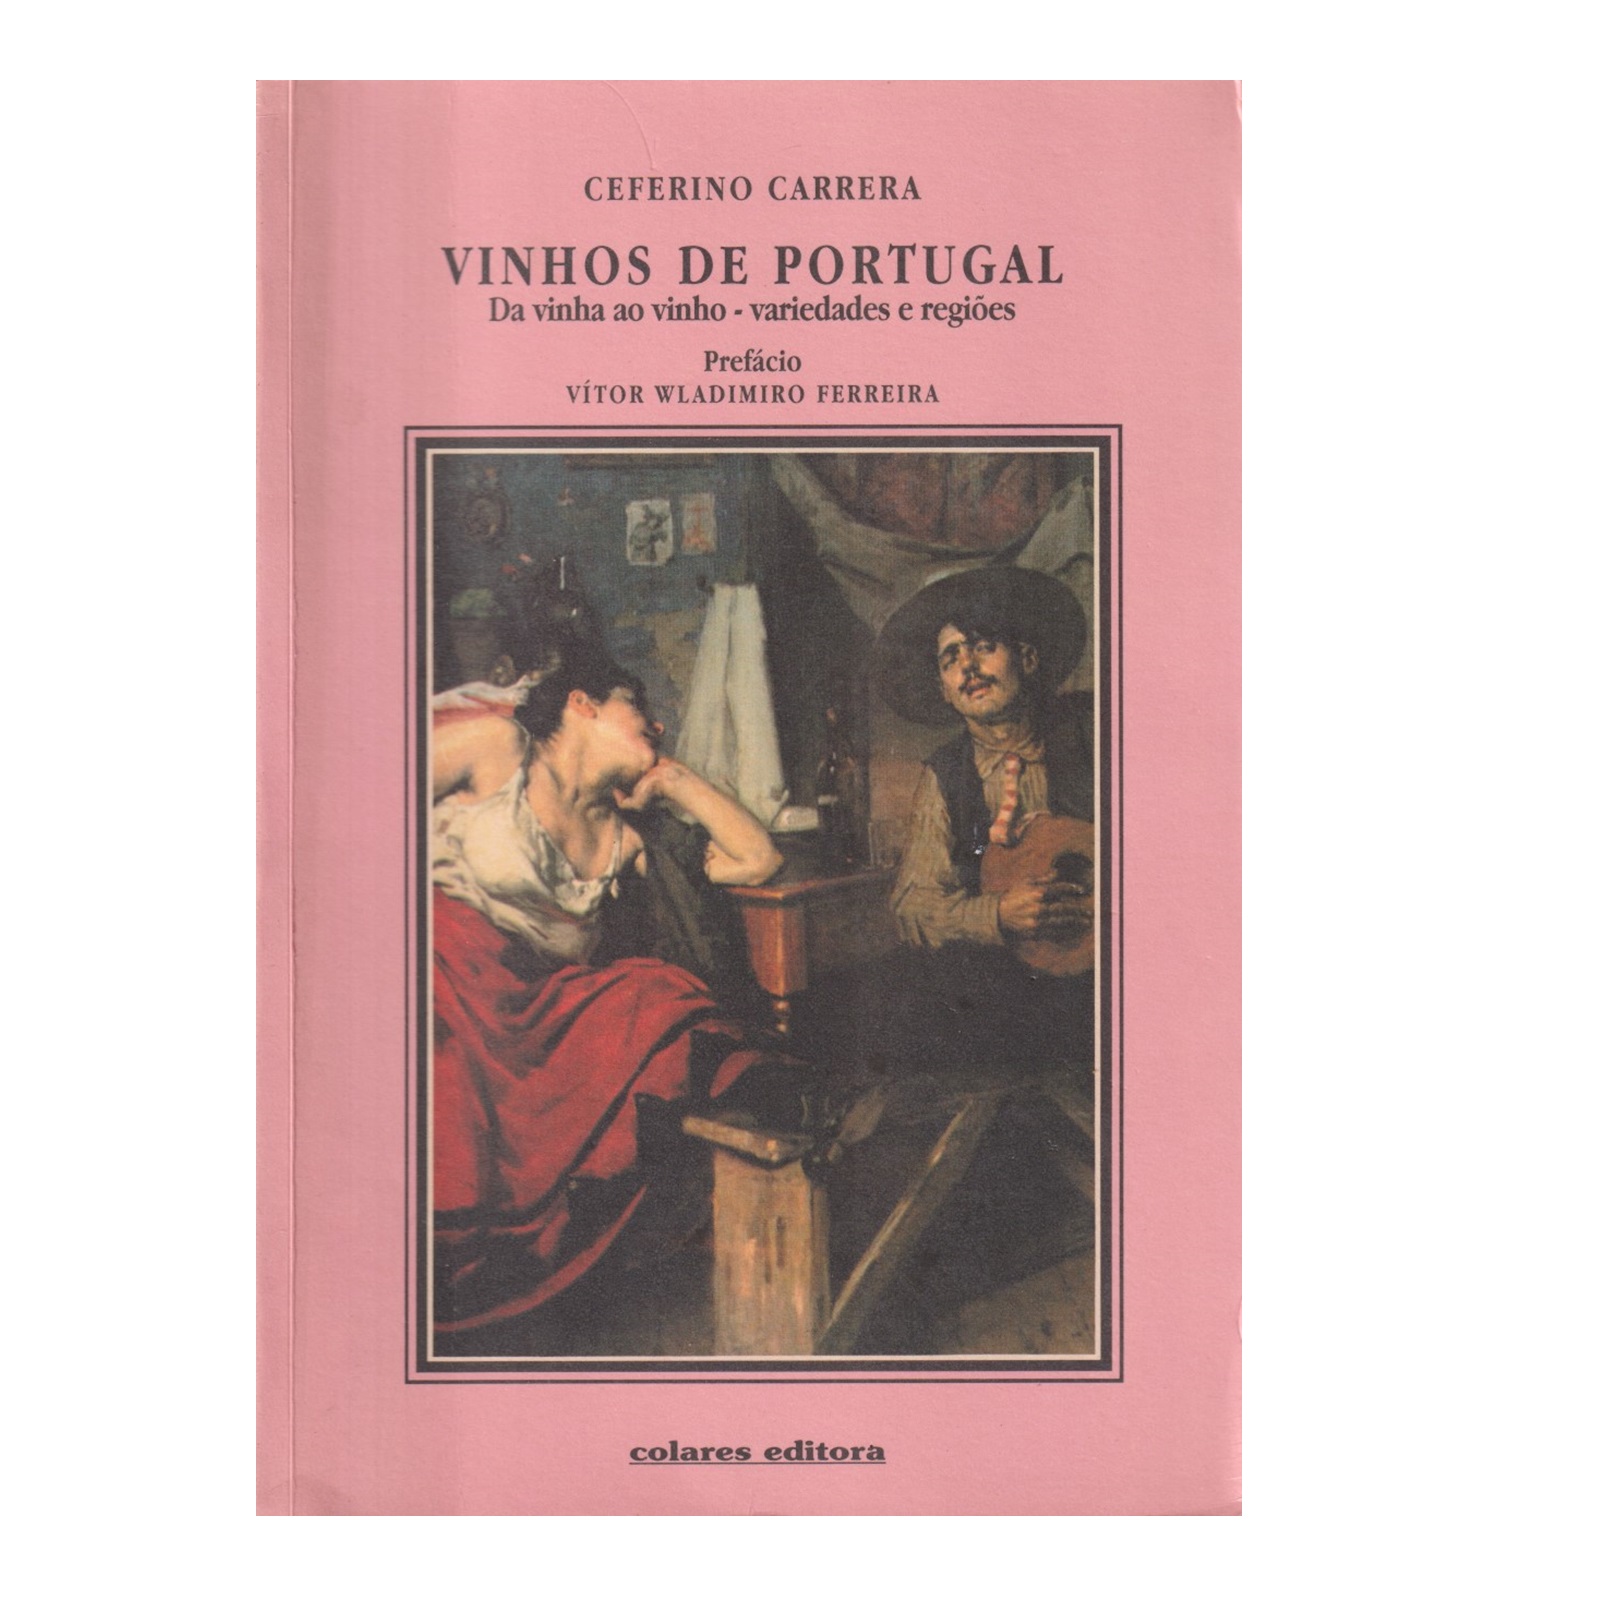 VINHOS DE PORTUGAL: DA VINHA AO VINHO - VARIEDADES E REGIÕES